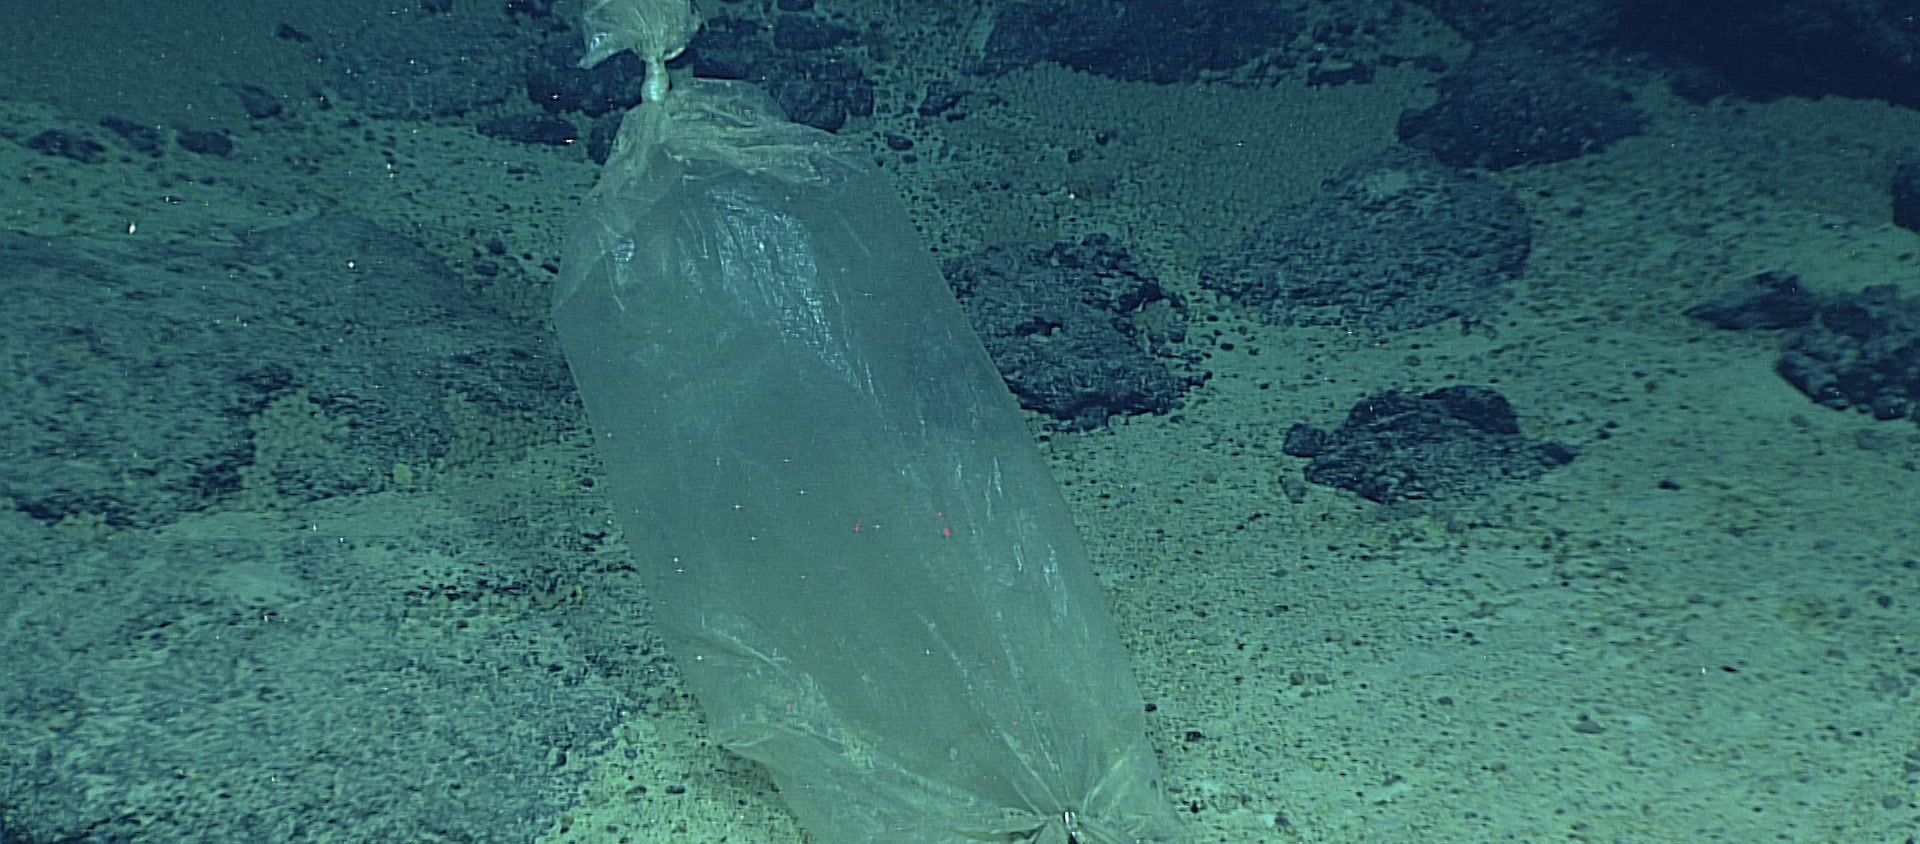 Una bolsa de plástico en el mar - Sputnik Mundo, 1920, 26.07.2020